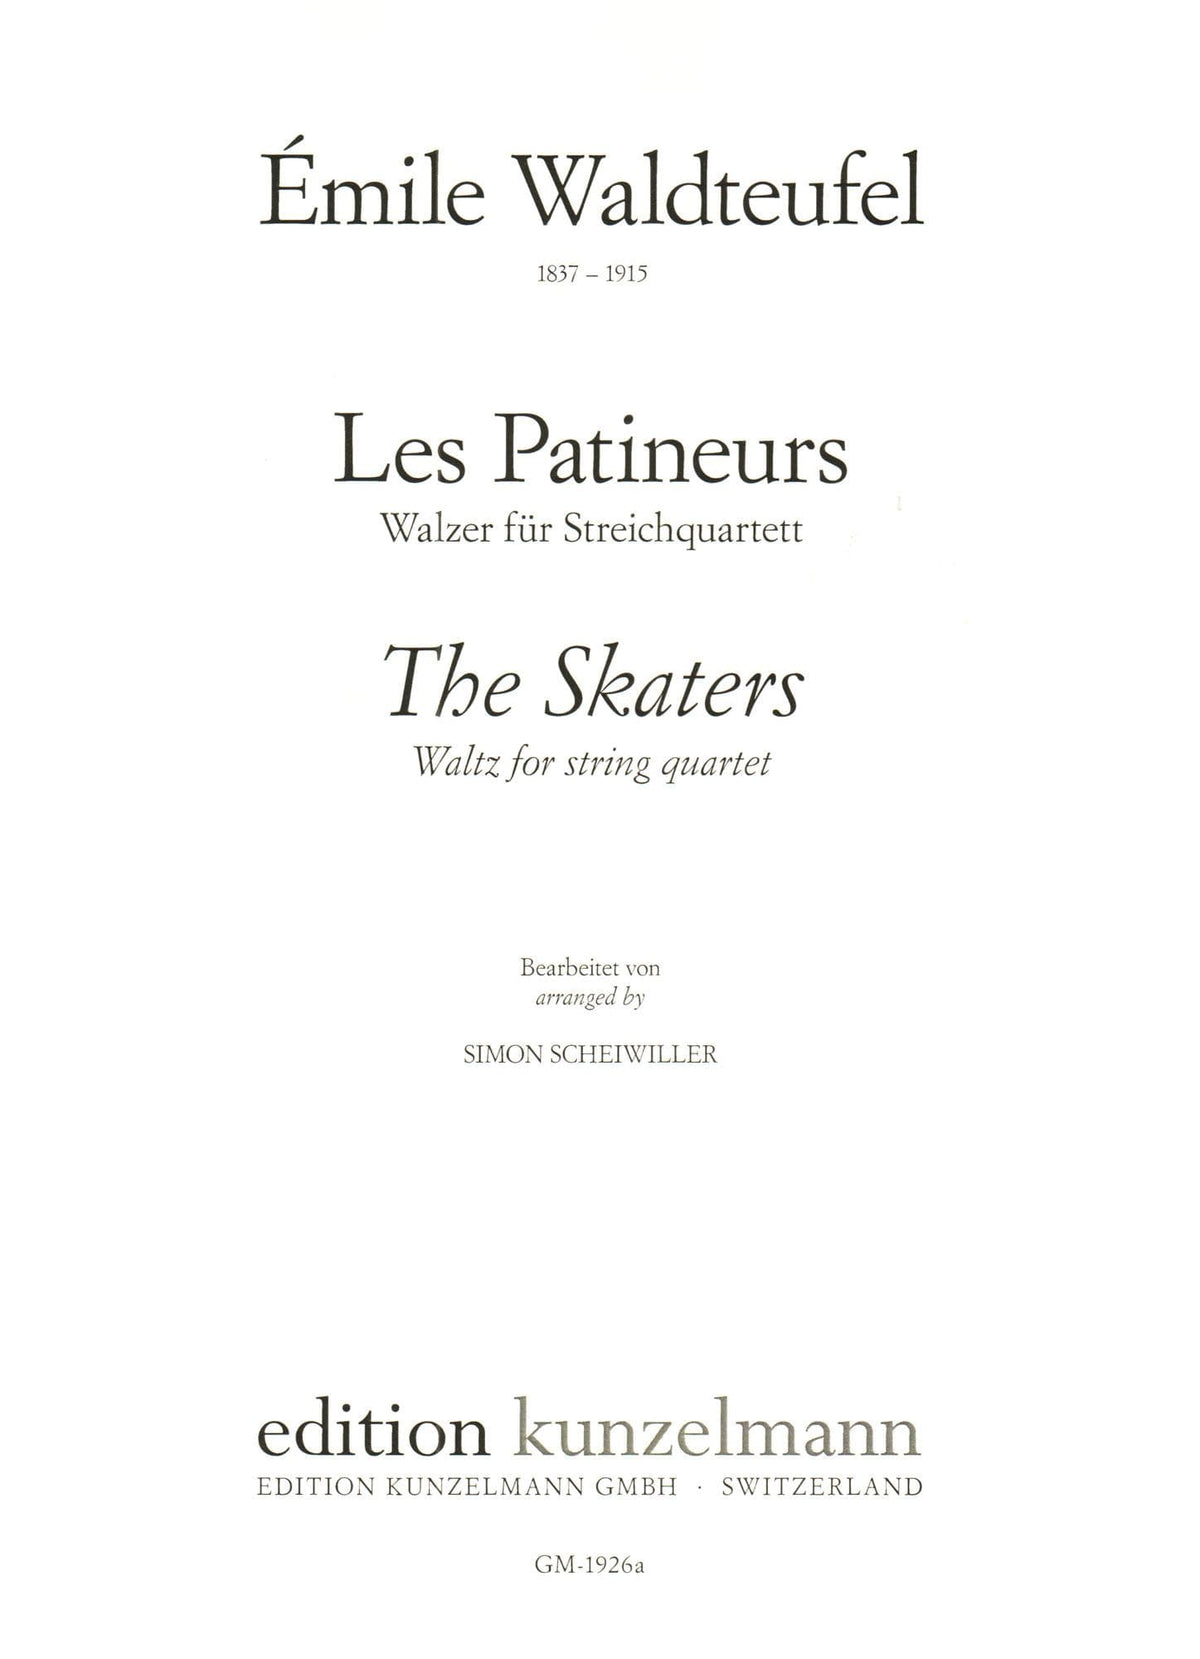 Waldteufel, Emile - The Skaters (Les Patineurs) Waltz, Opus 183 - for String Quartet - arranged by Simon Scheiwiller - Edition Kunzelmann